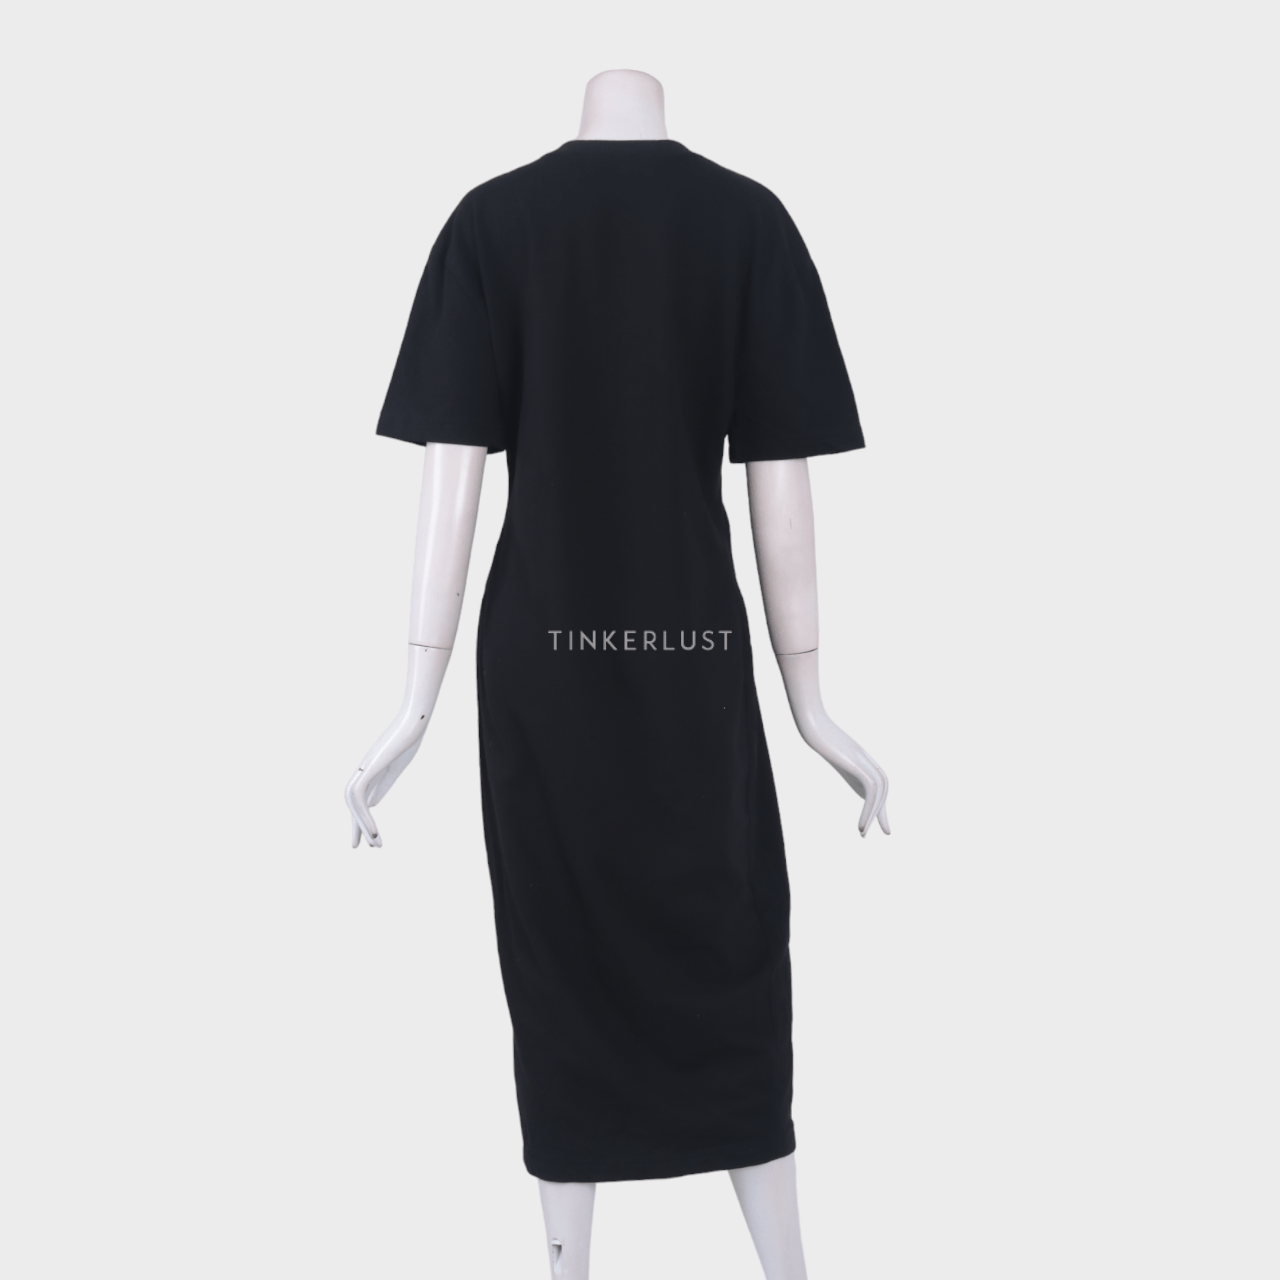 Tities Sapoetra Black Slit Midi Dress